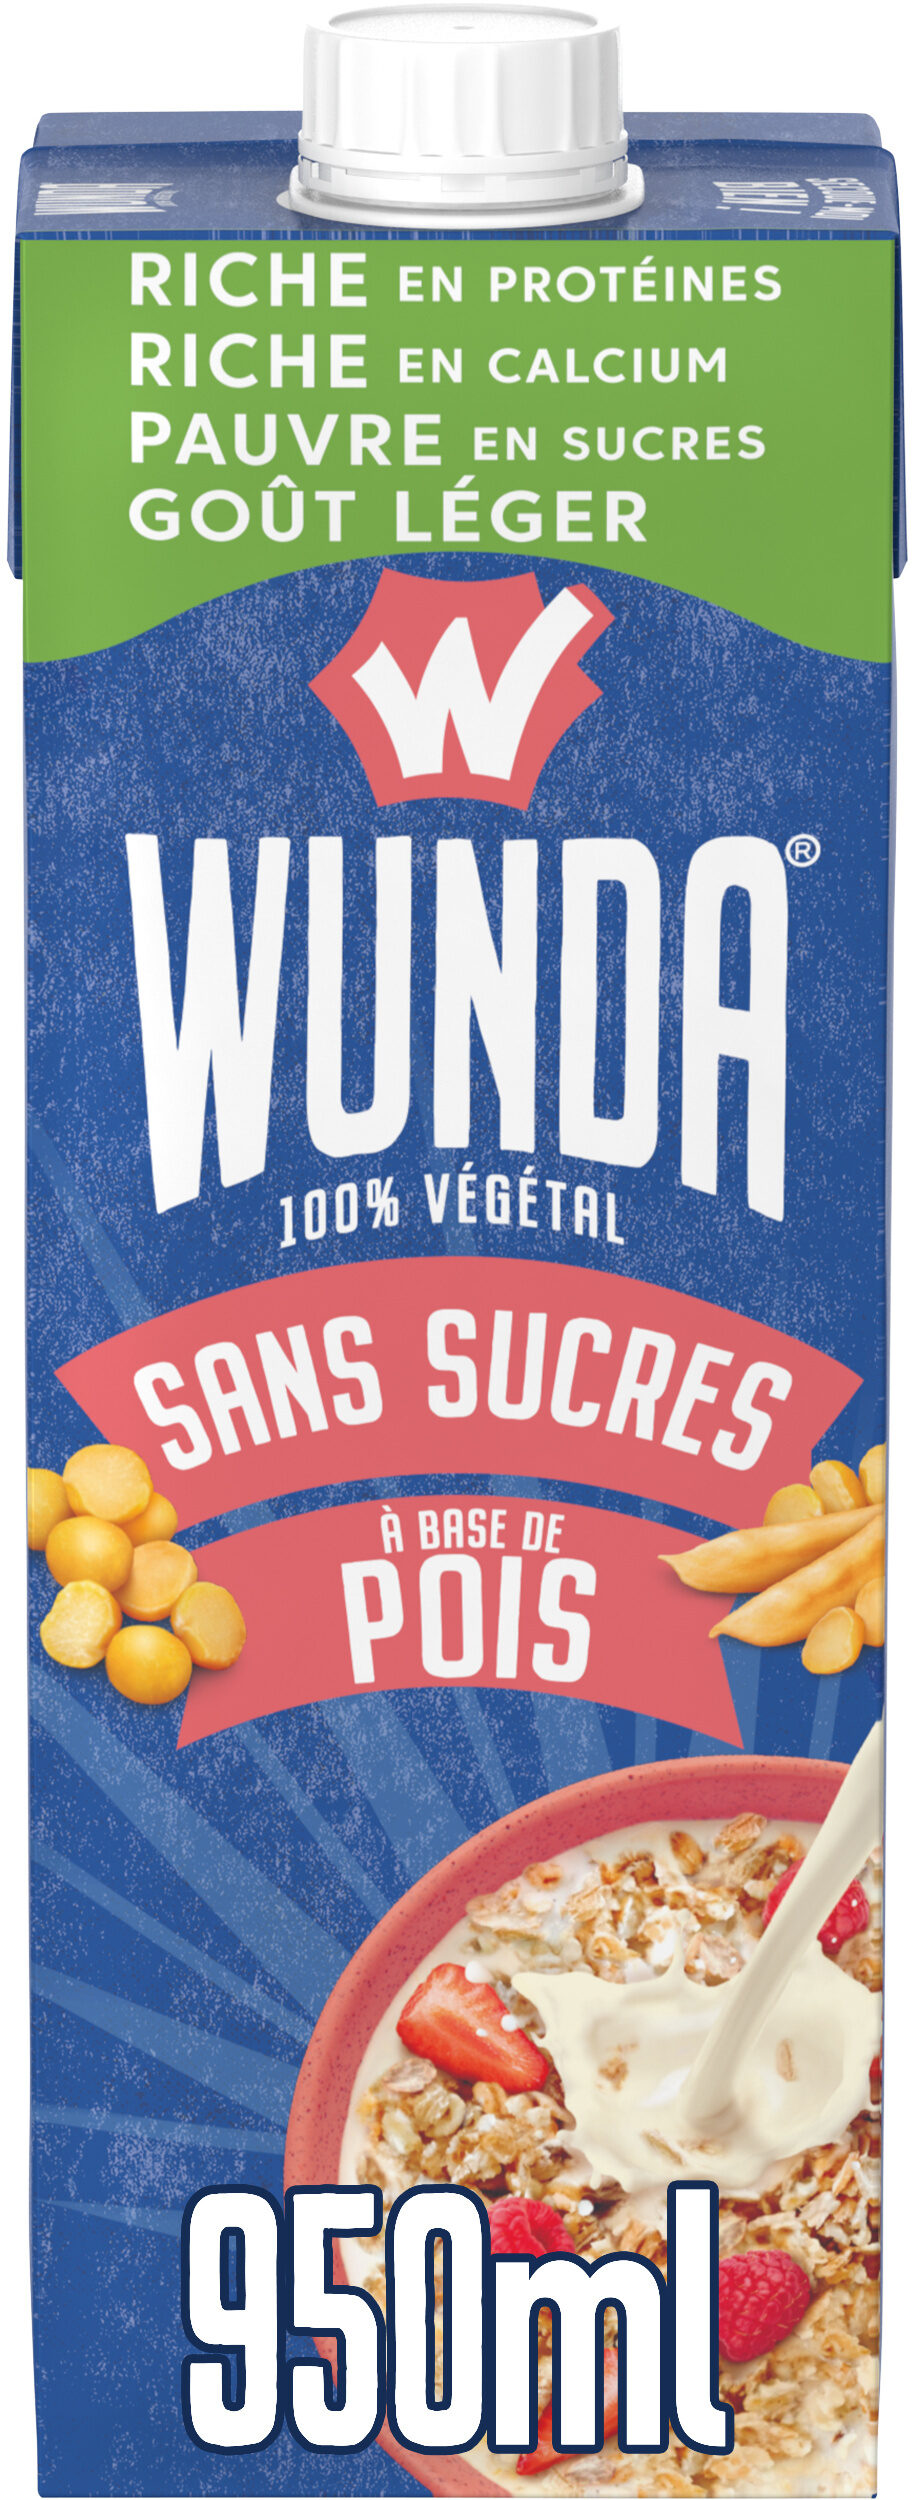 WUNDA Sans sucres 950ml - Producte - fr